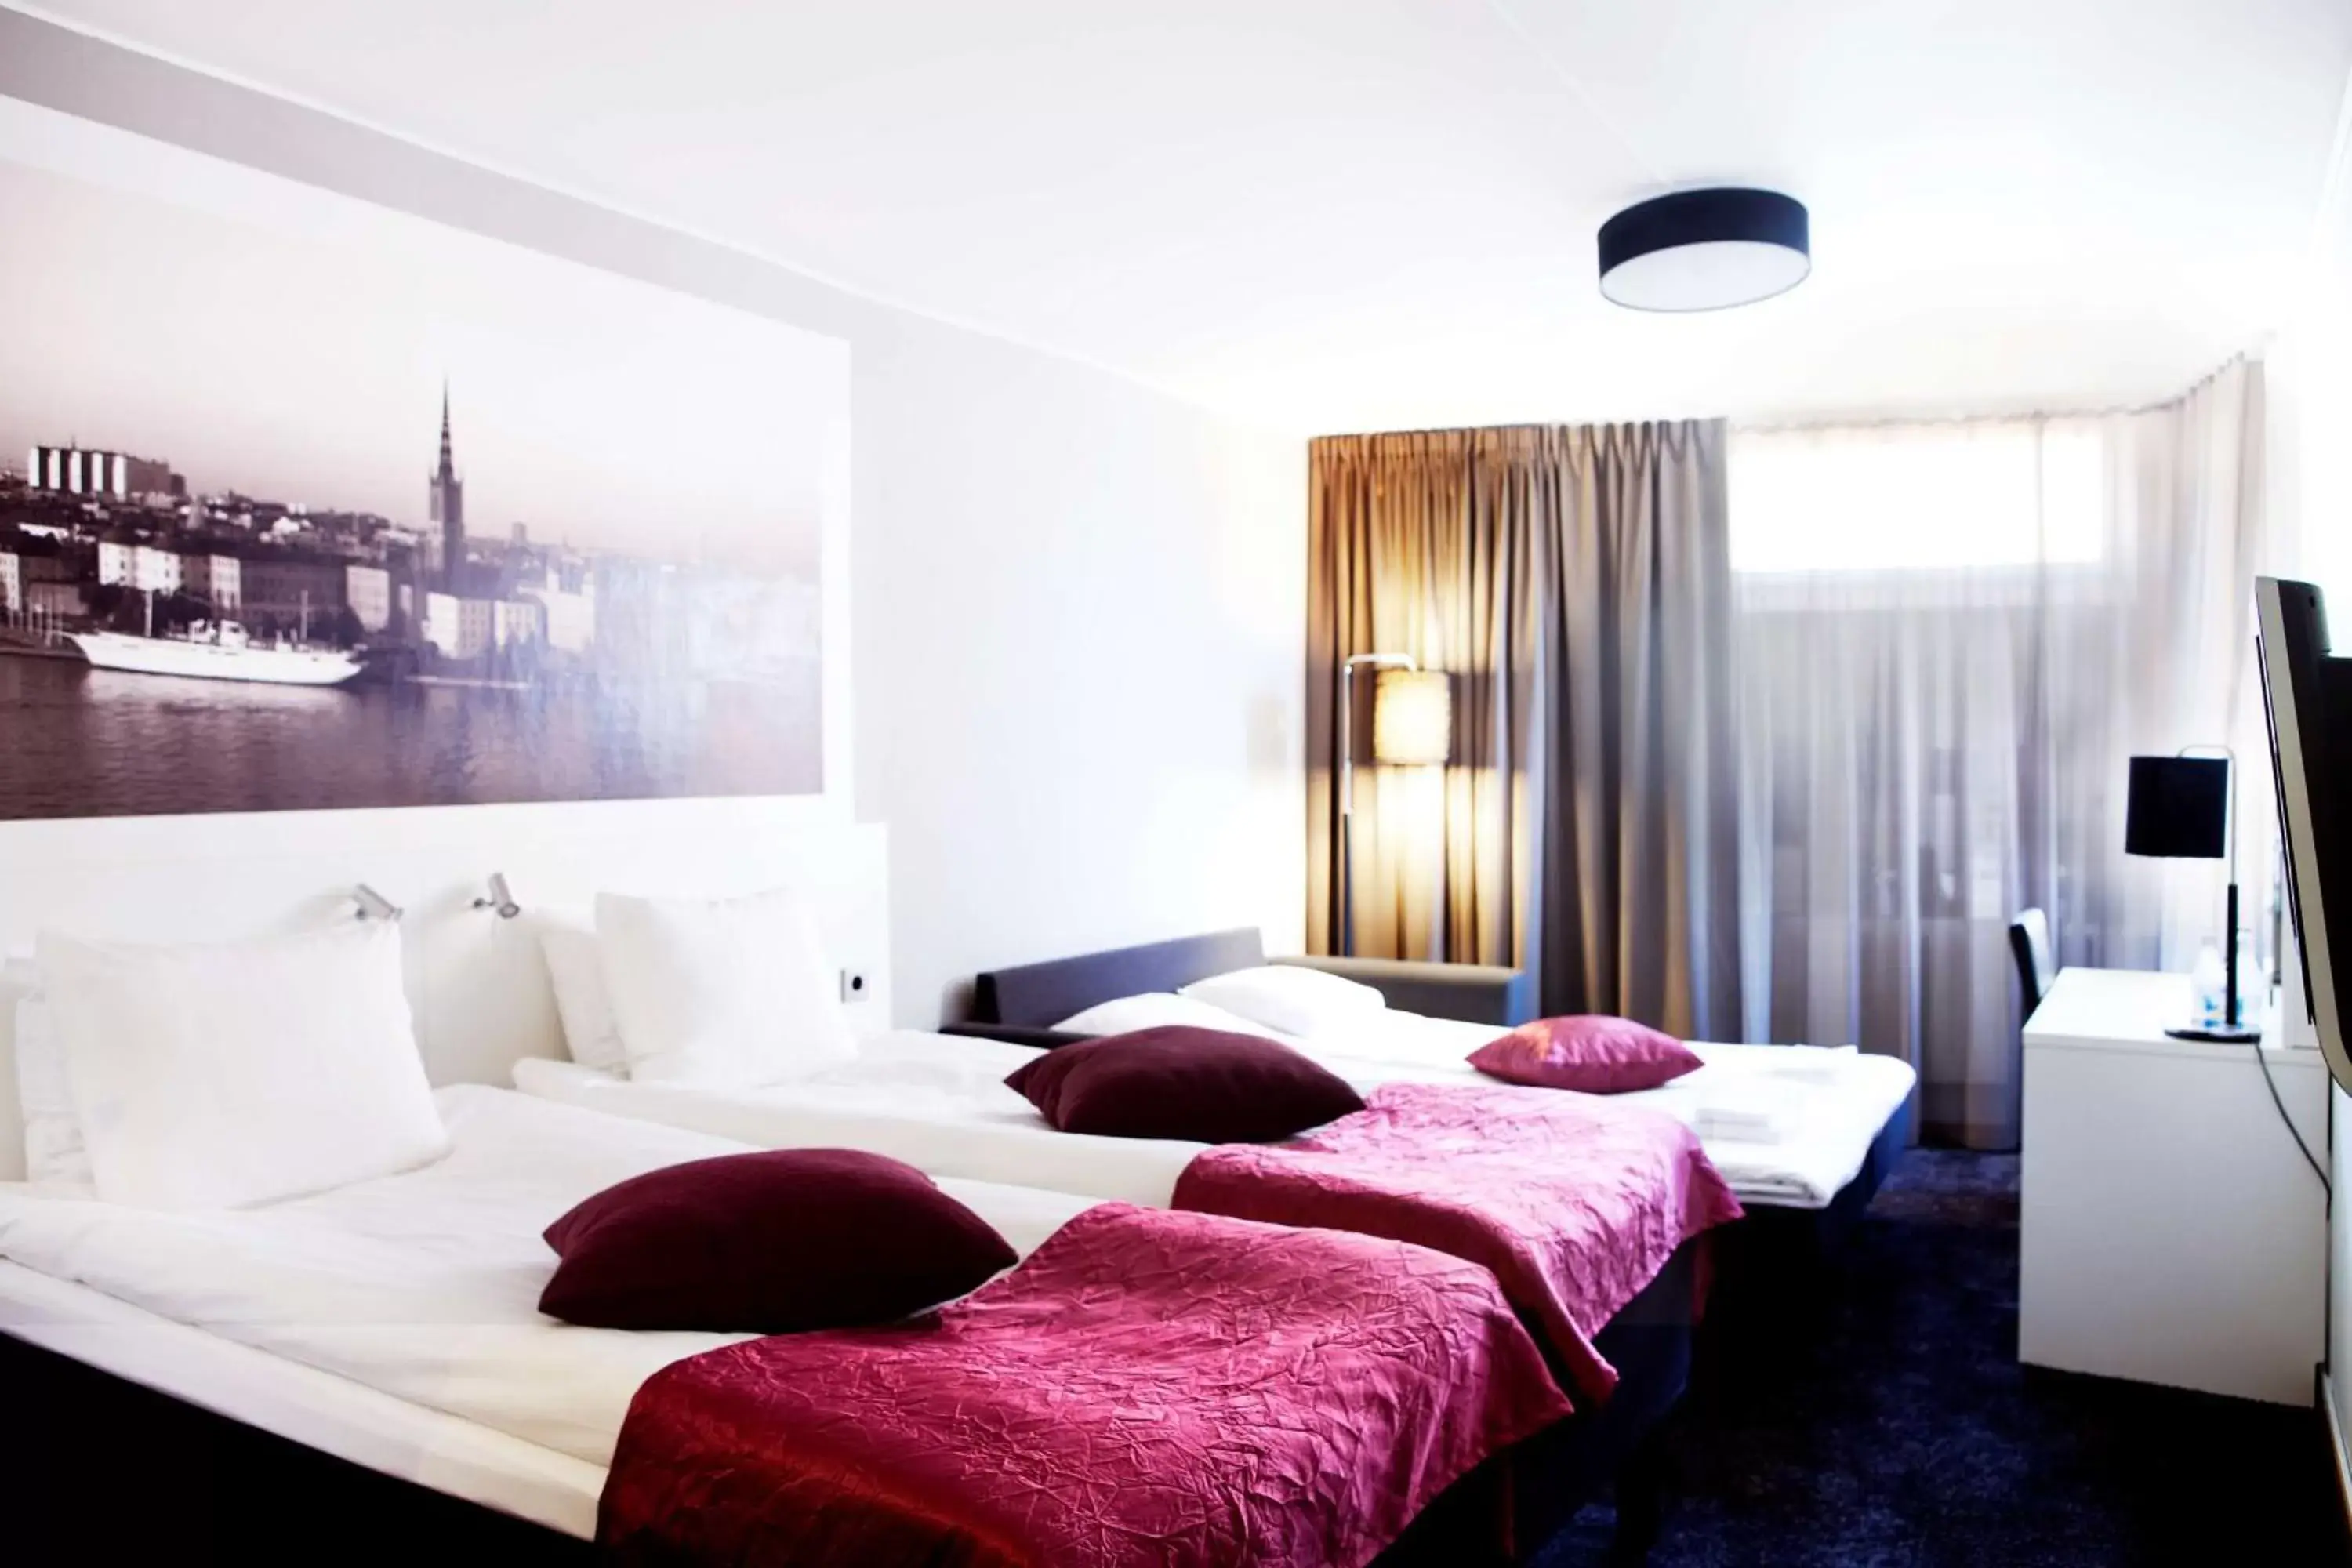 People, Bed in Best Western Kom Hotel Stockholm